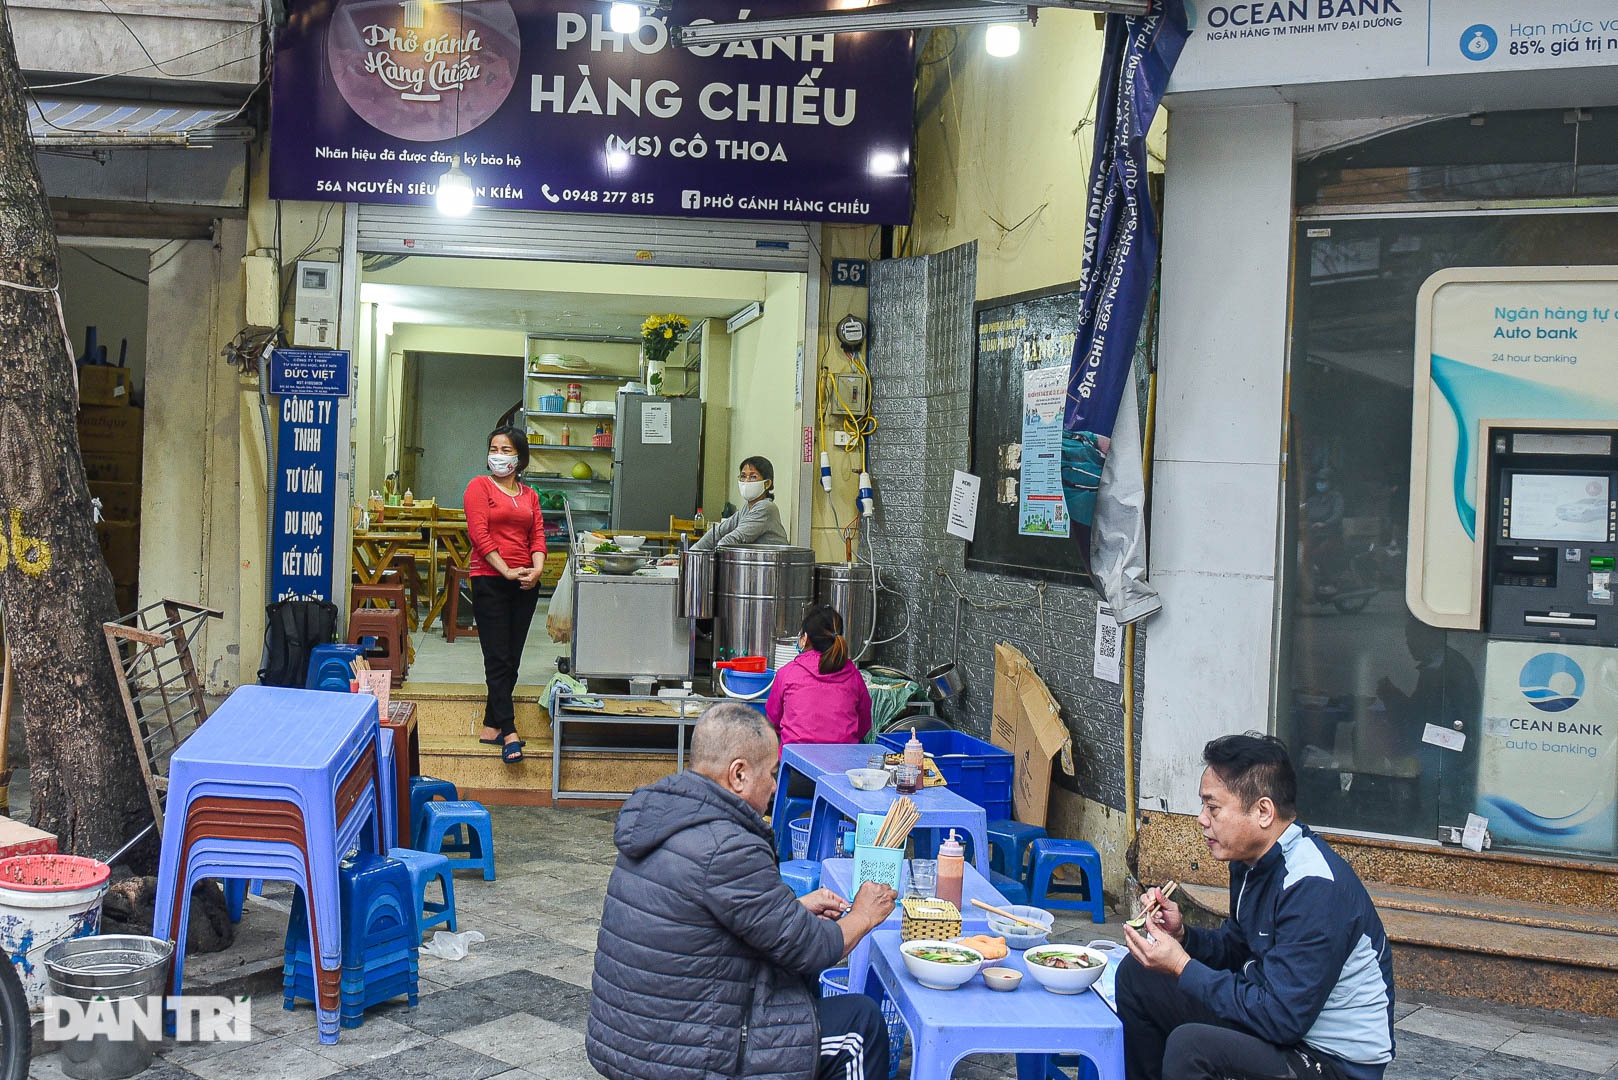 Phở gánh Hàng Chiếu bán ban ngày, khách tiếc nuối biểu tượng ăn đêm Hà Nội - Ảnh 2.